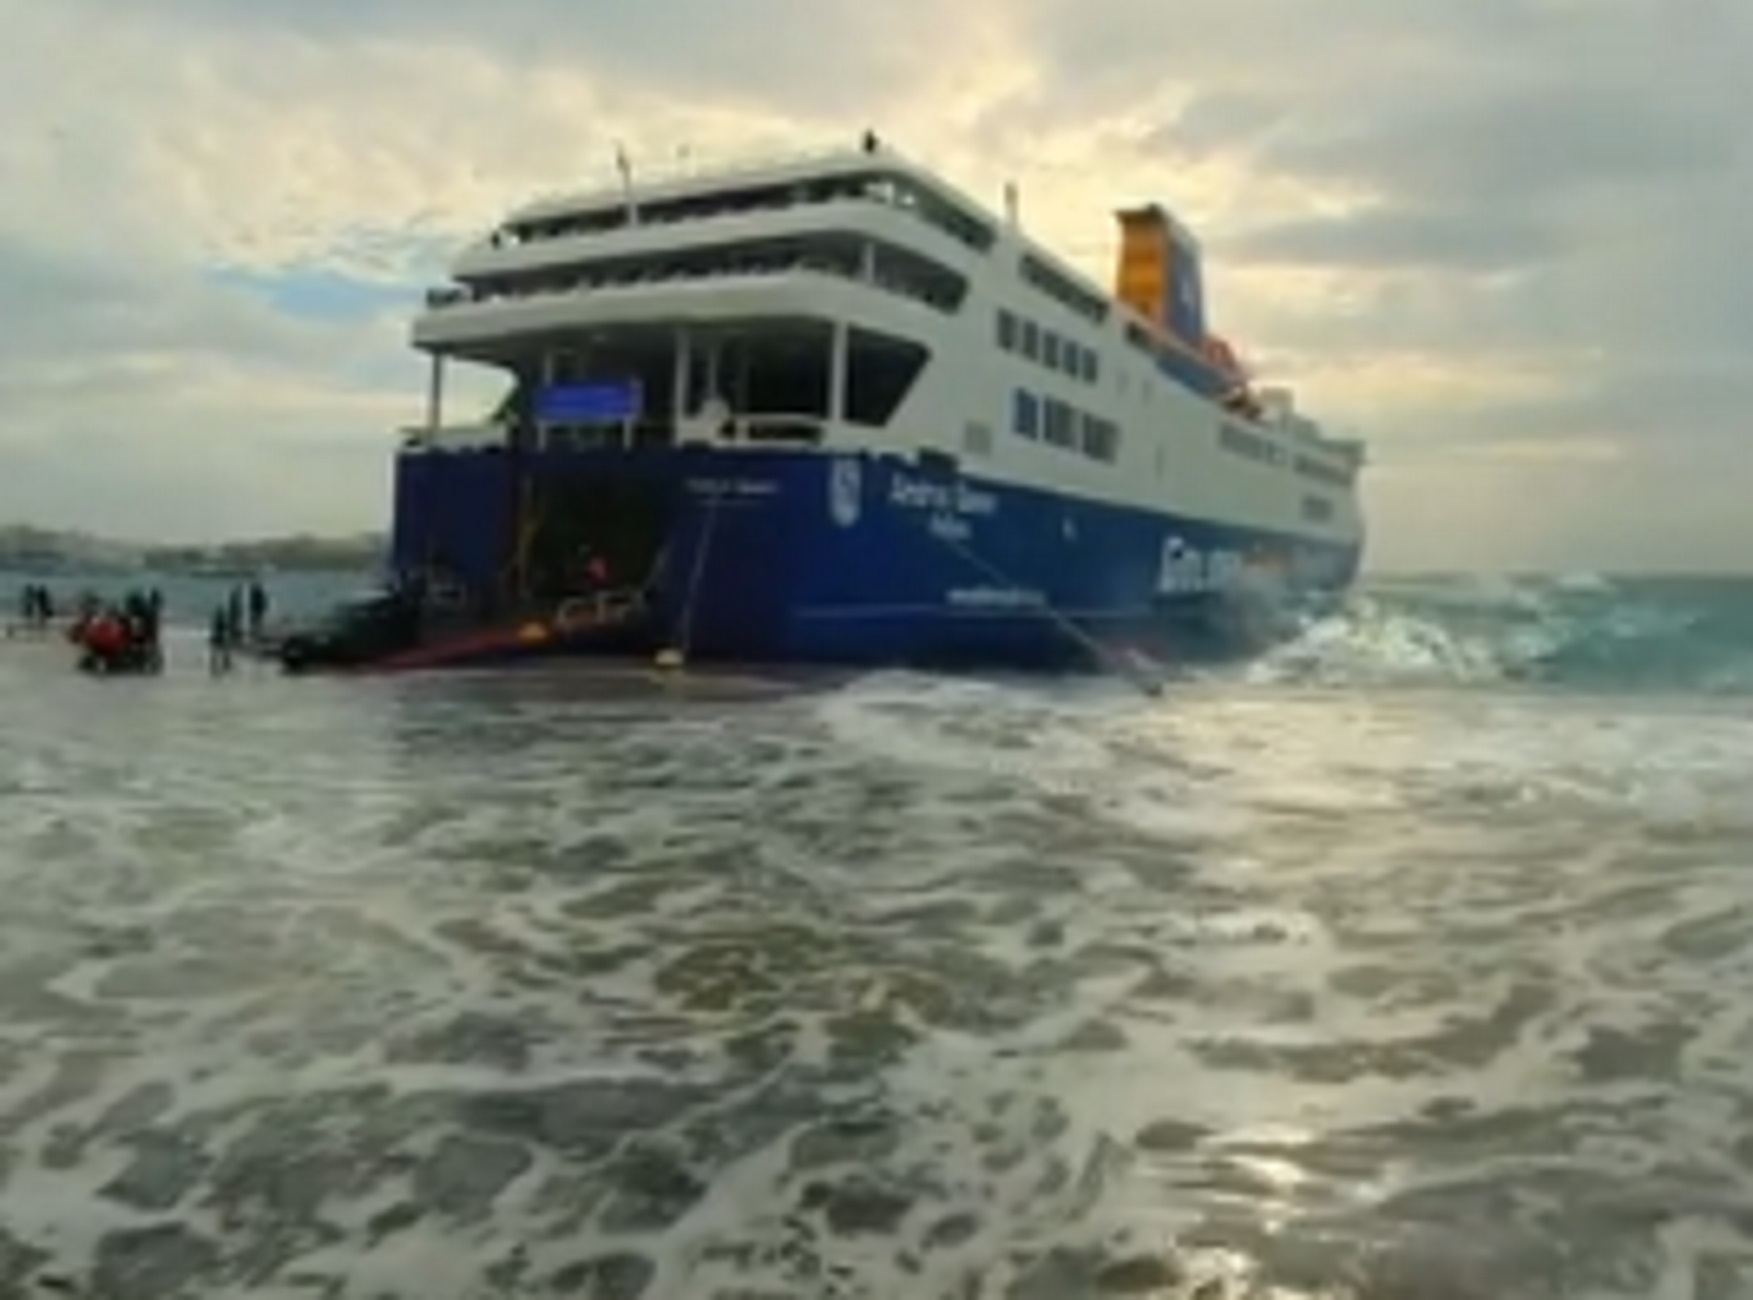 Τήνος: Τεράστια κύματα «καταπίνουν» το λιμάνι την ώρα που πλοίο αποβιβάζει κόσμο